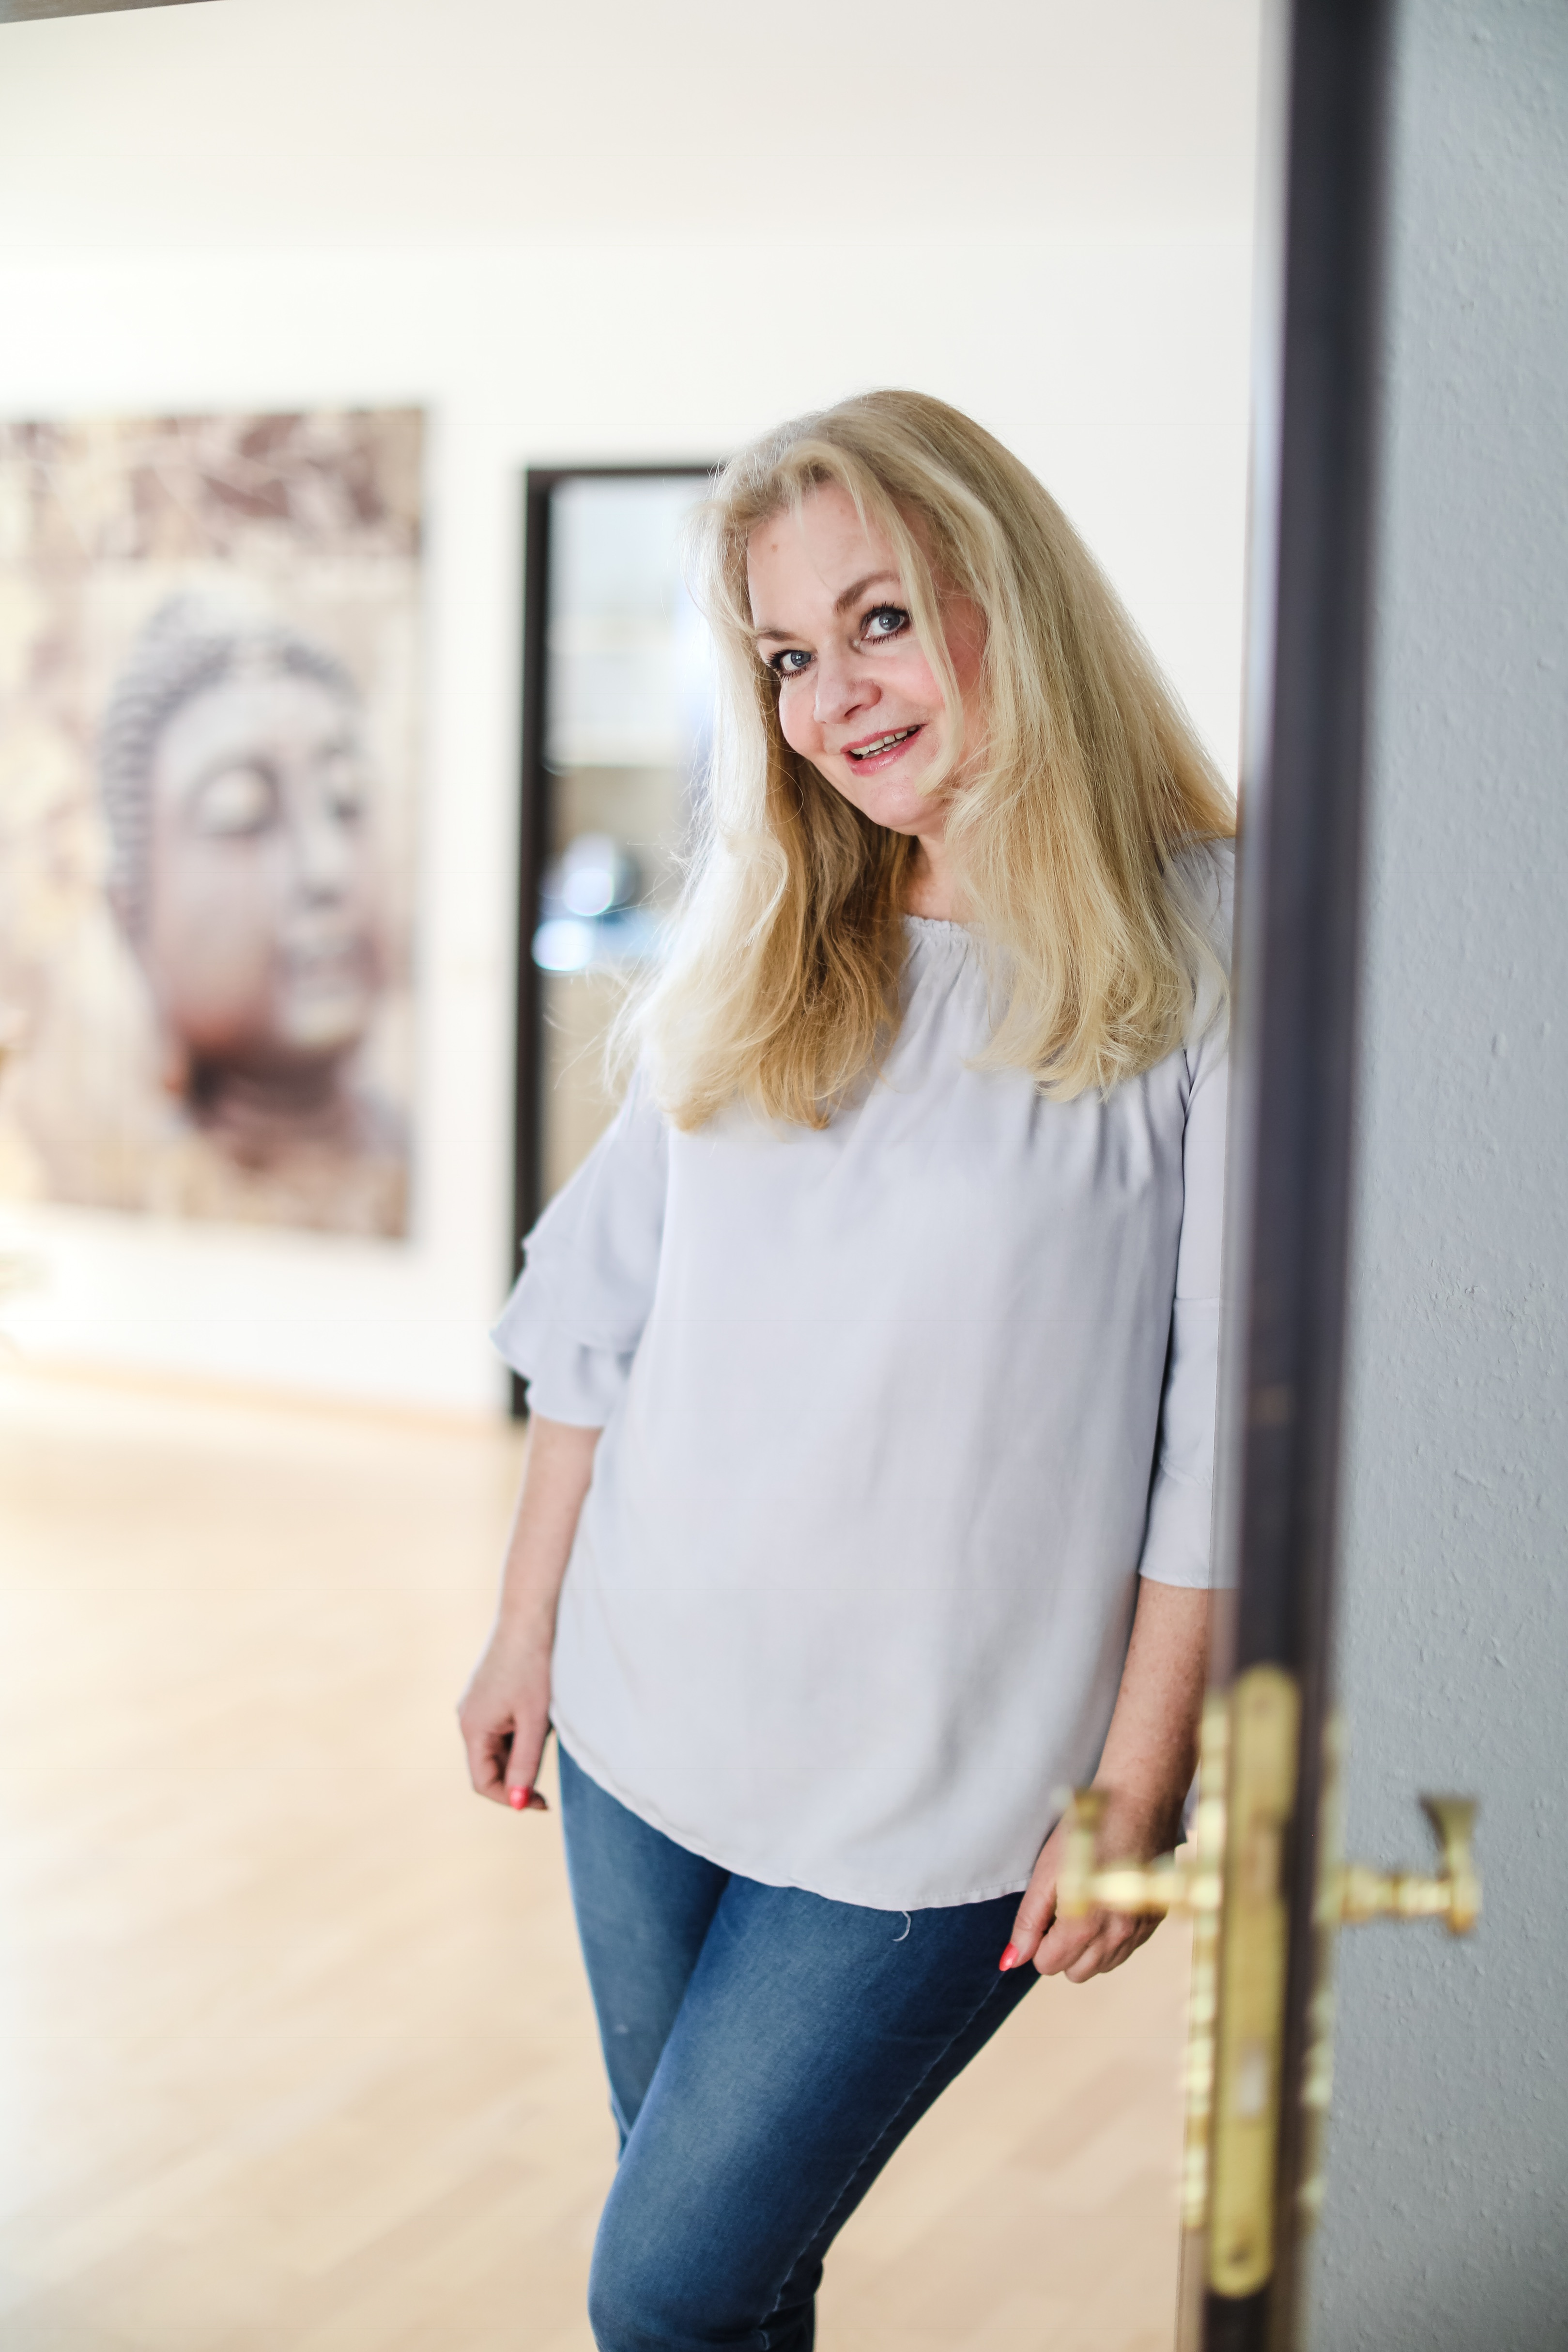 Petra Rogal 
Heilpraktikerin für Psychotherapie 
und Mentaltrainerin